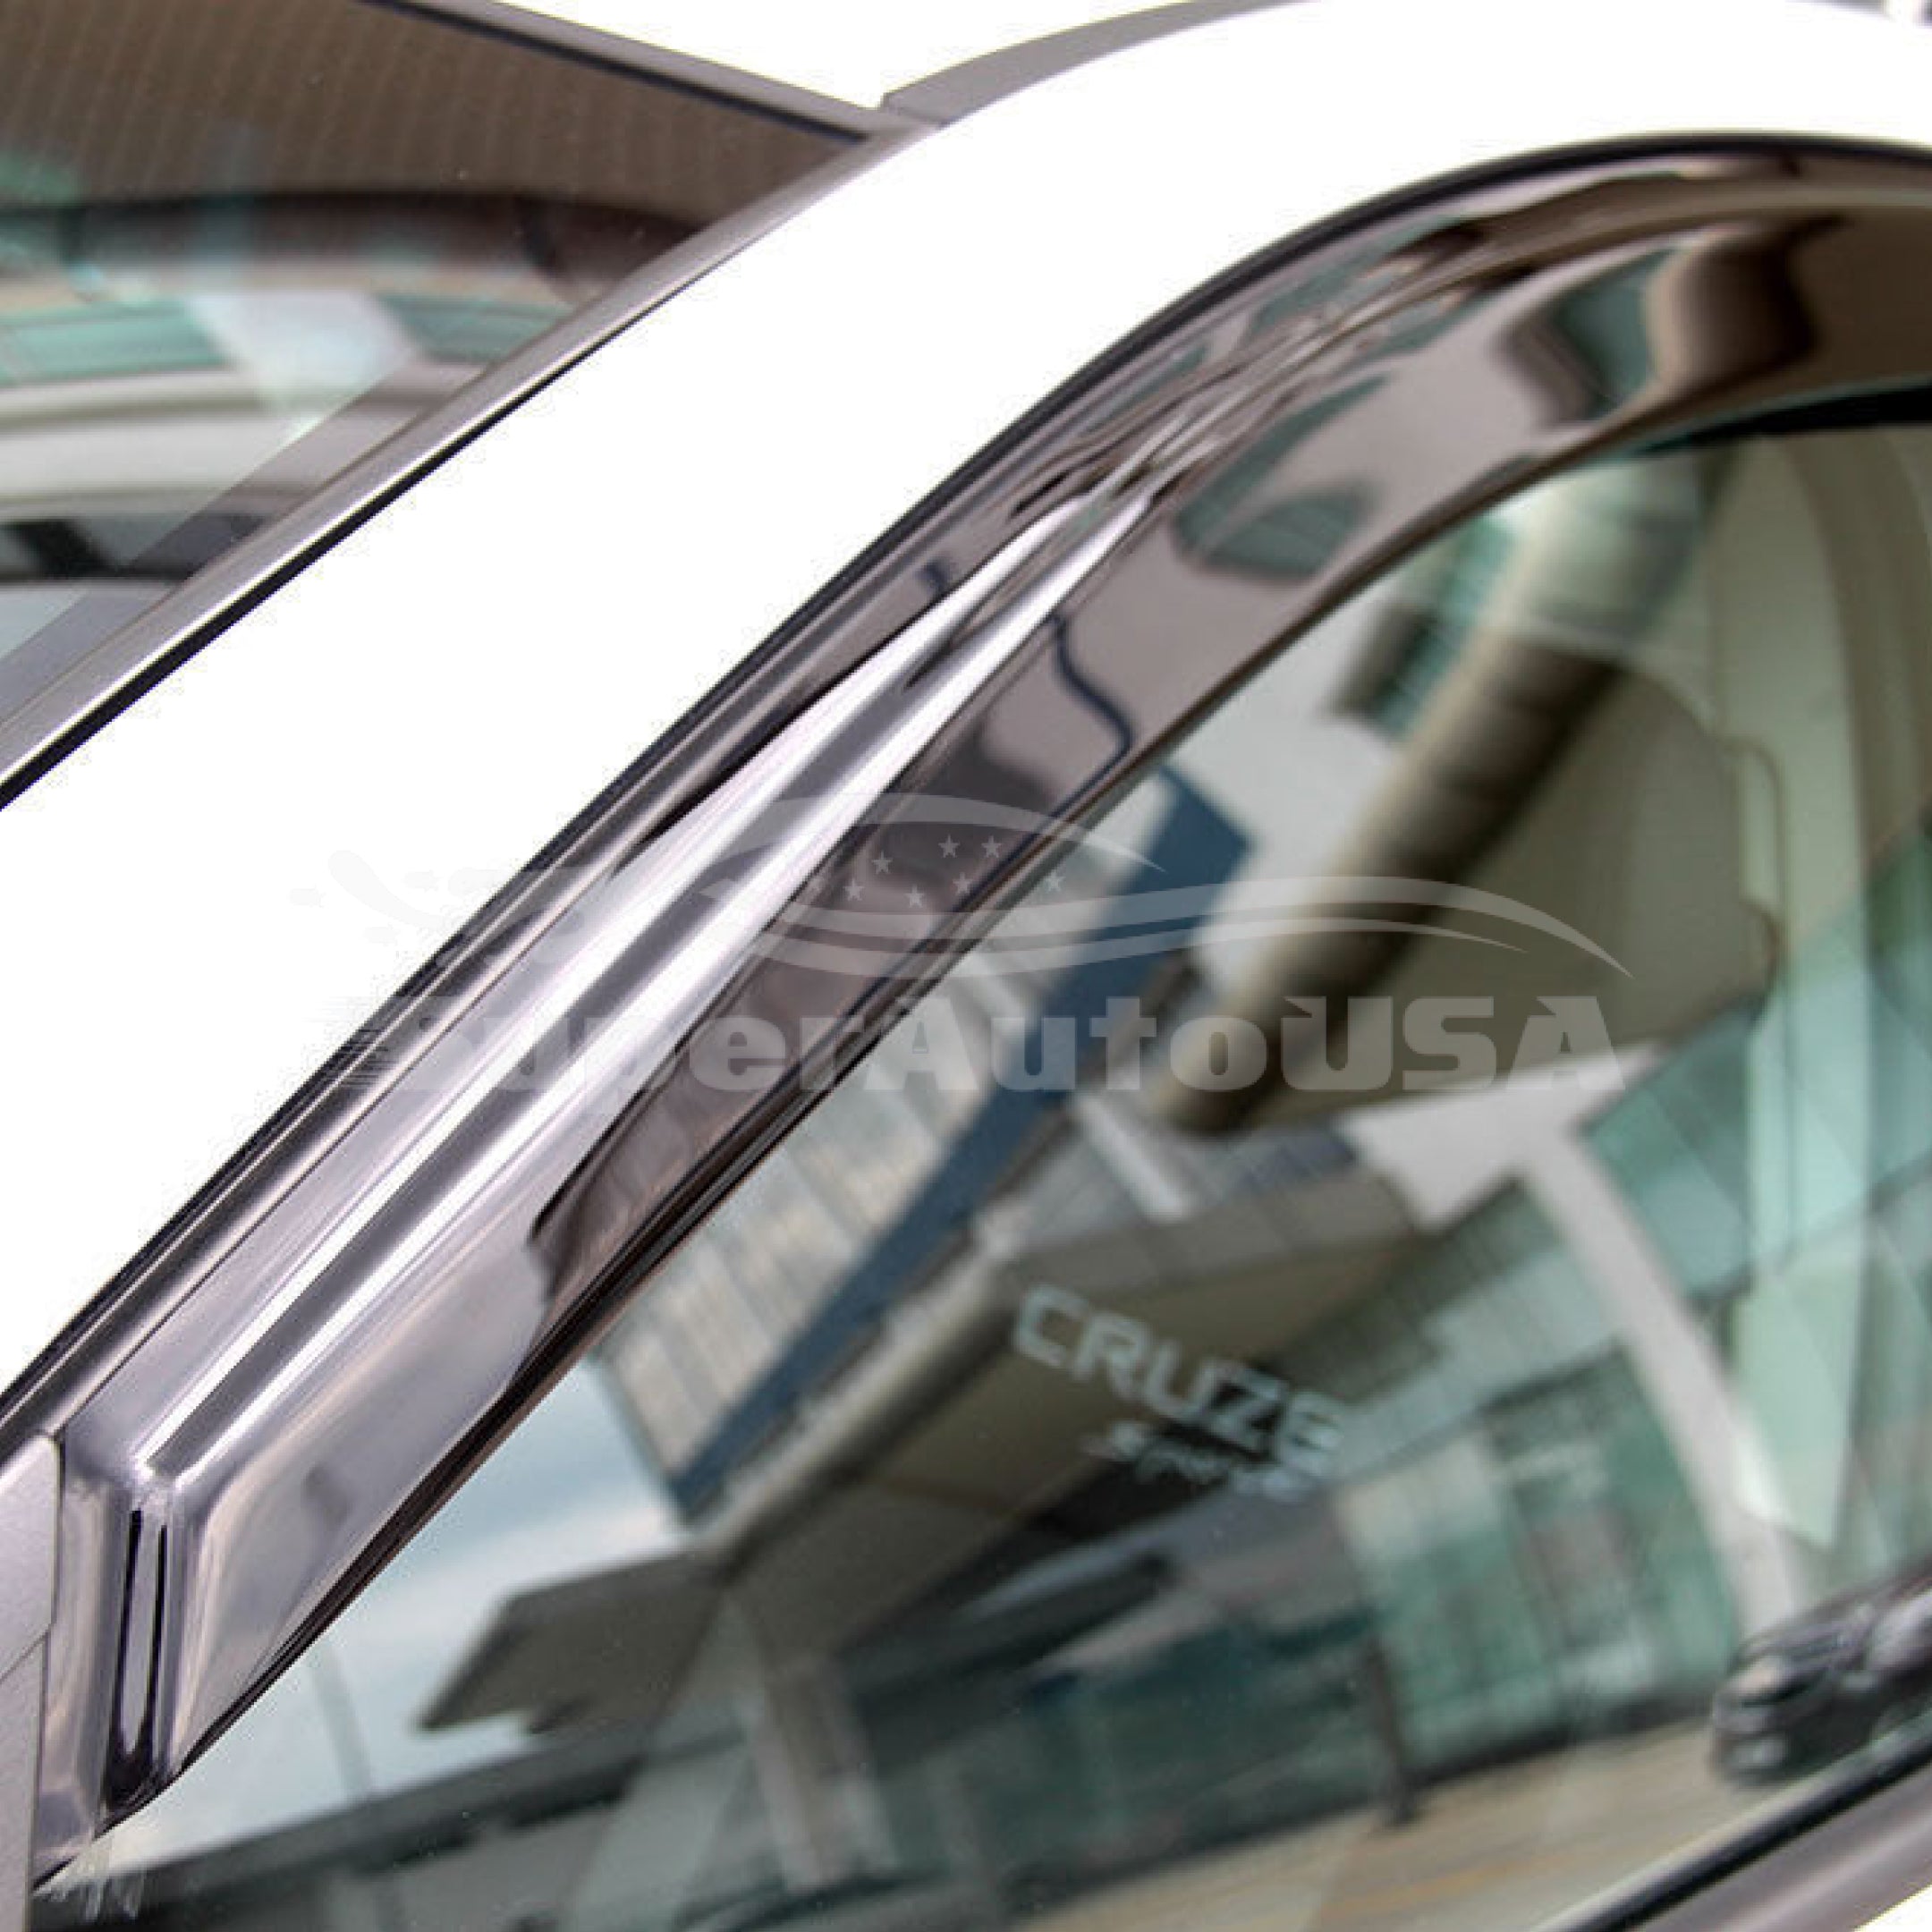 Fit 2018-21 Subaru Impreza Sedan OE Style Vent Window Visors Rain Sun Wind Guards Shade Deflectors